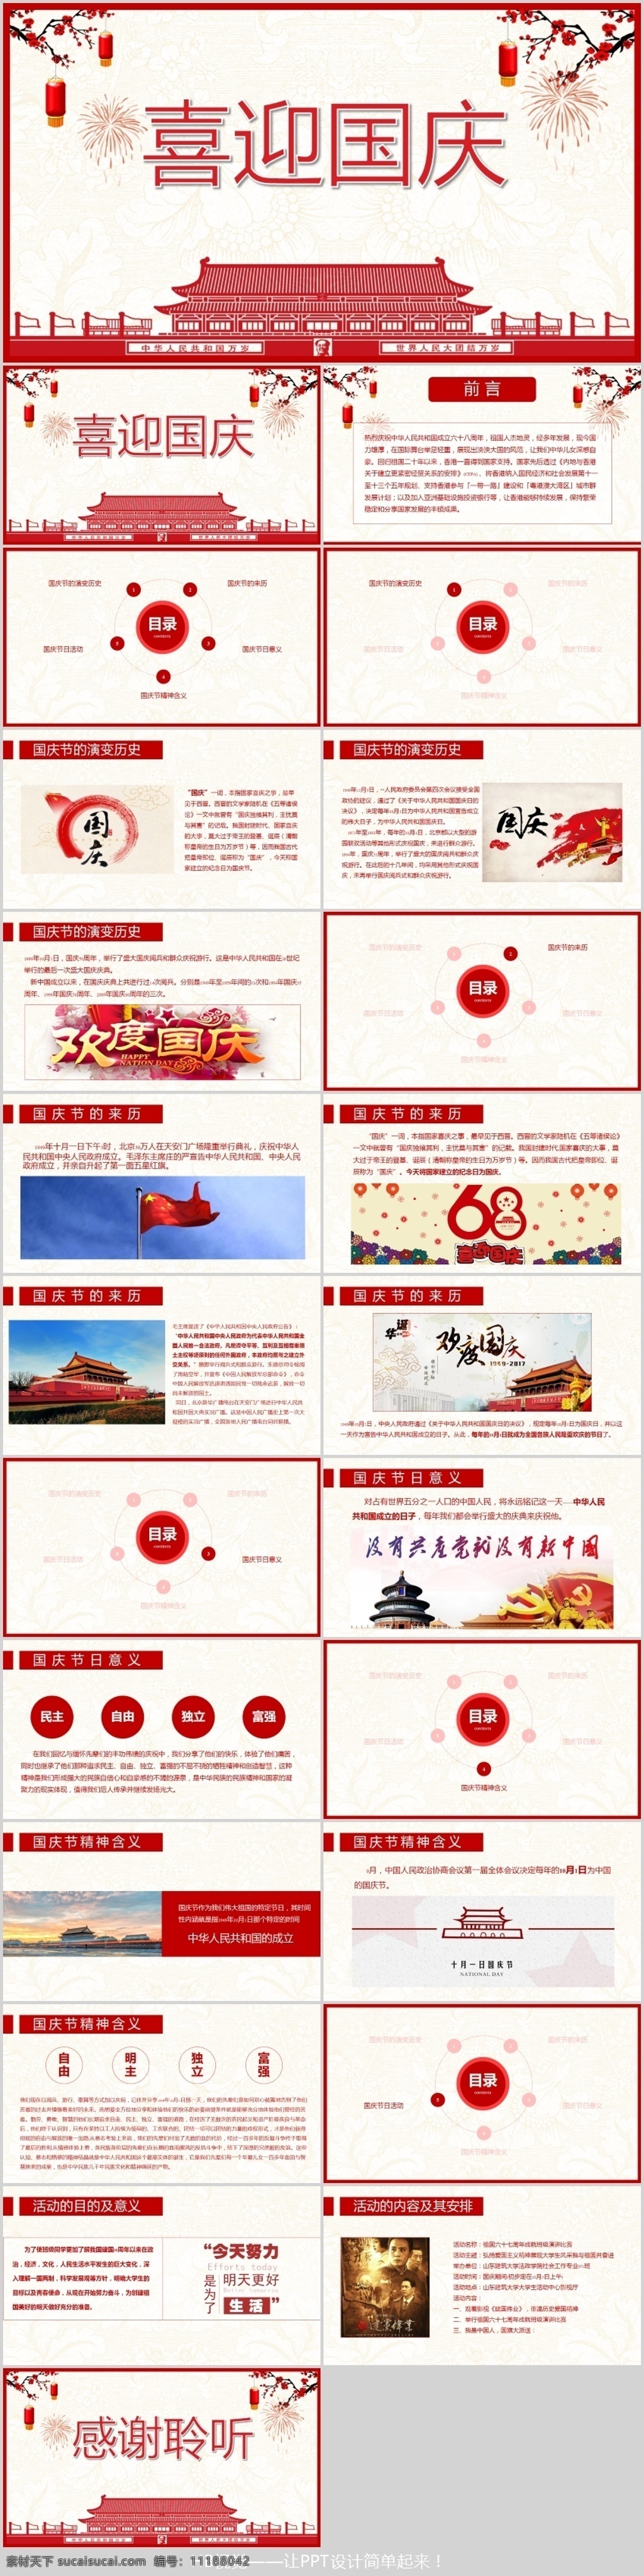 大红 喜迎 国庆 节日 宣讲 中国 风 模板 中国风 喜欢国庆 节日宣讲